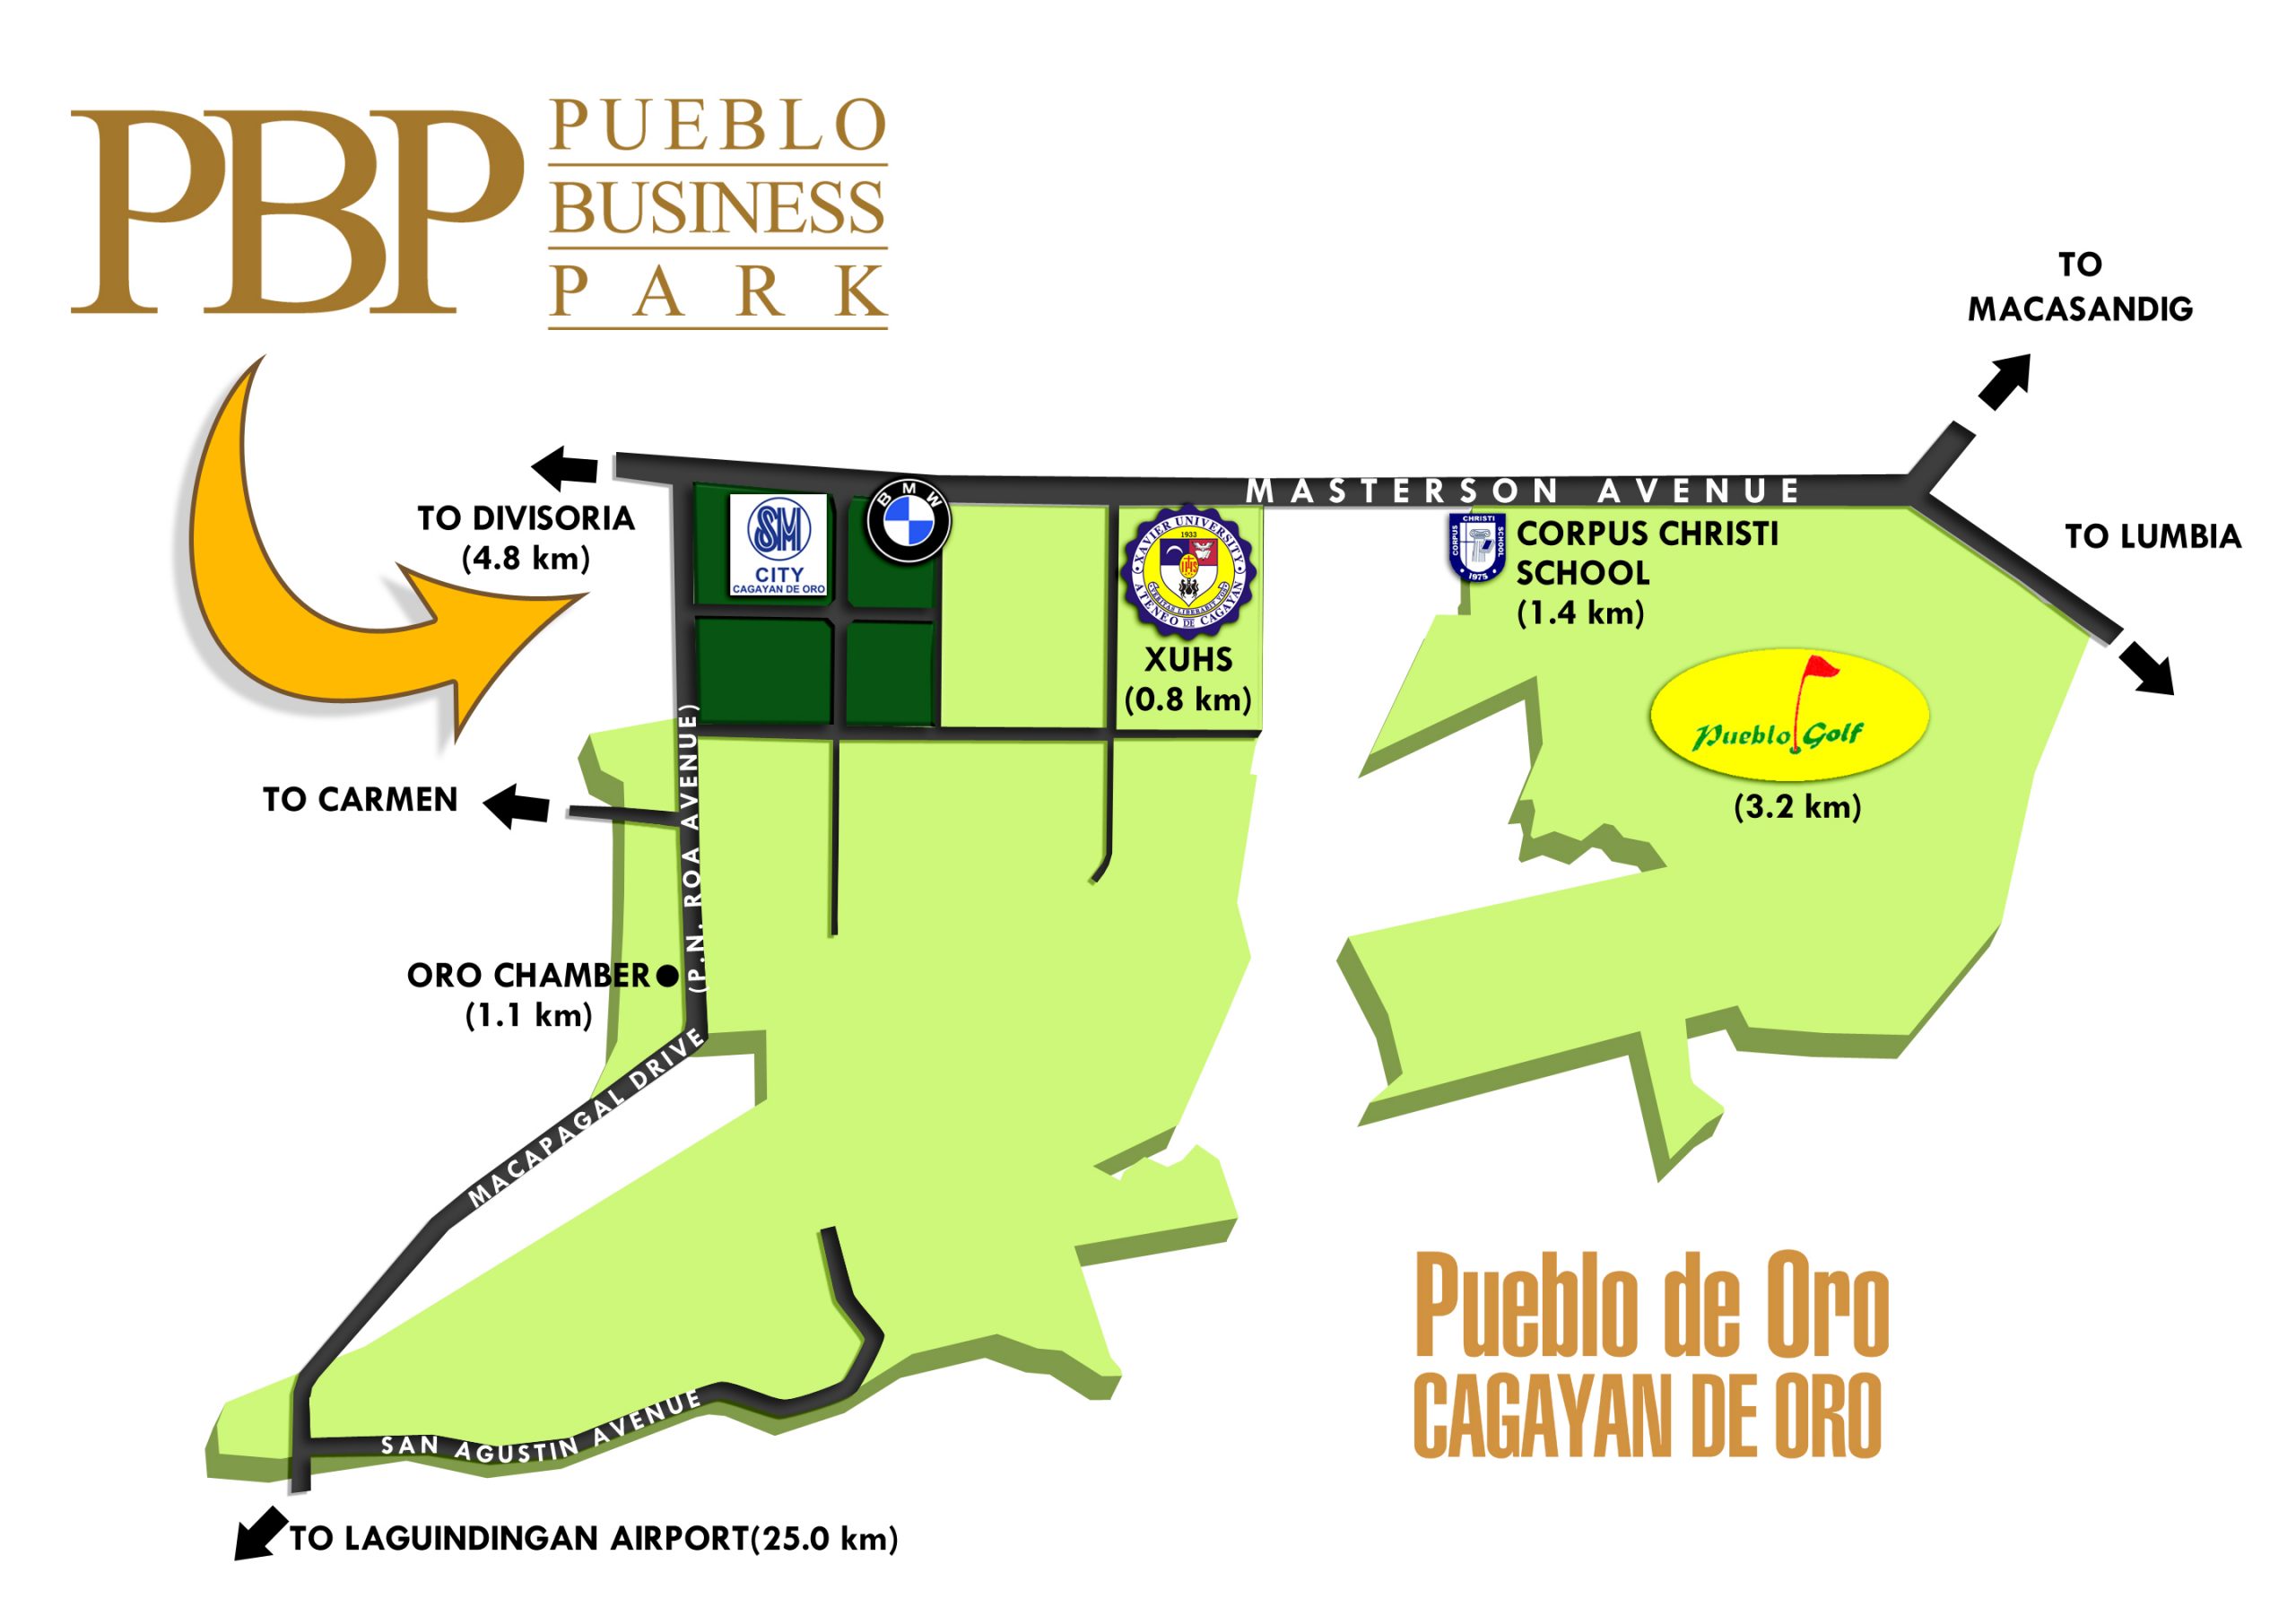 Park Place II in Lapu Lapu, Cebu